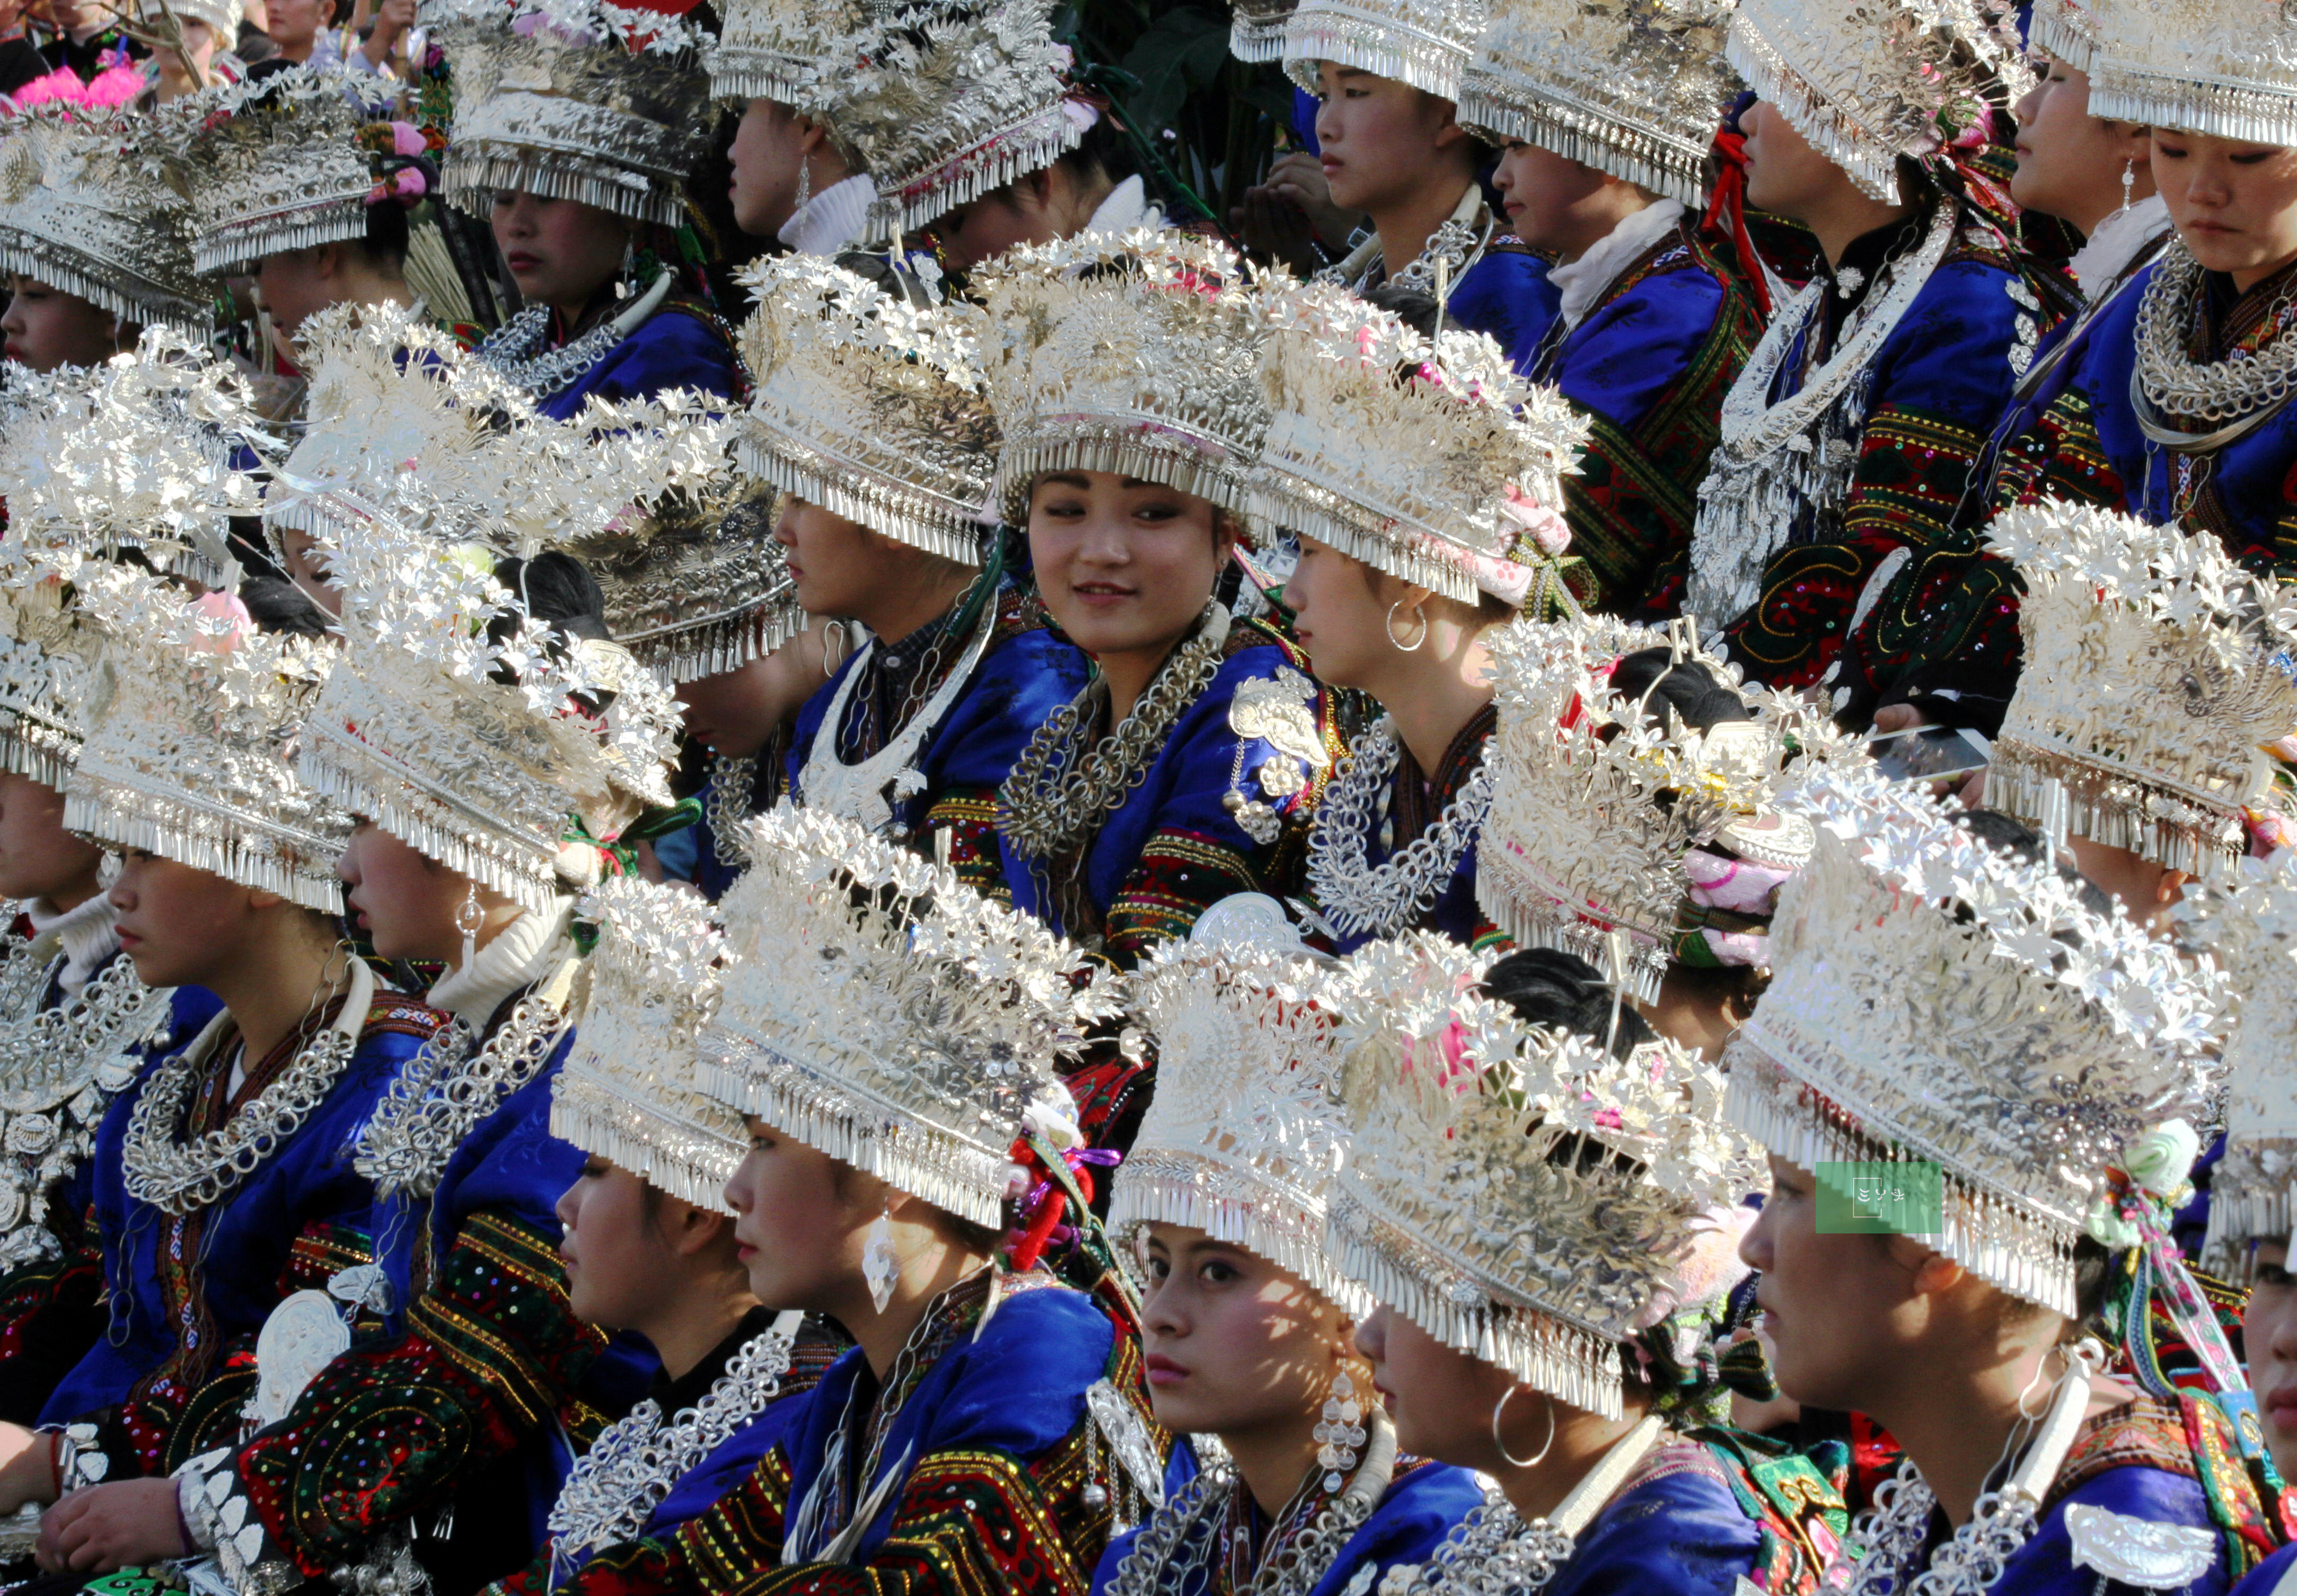 苗族人民最隆重的传统节日苗年见闻:顽皮的老人与孩童